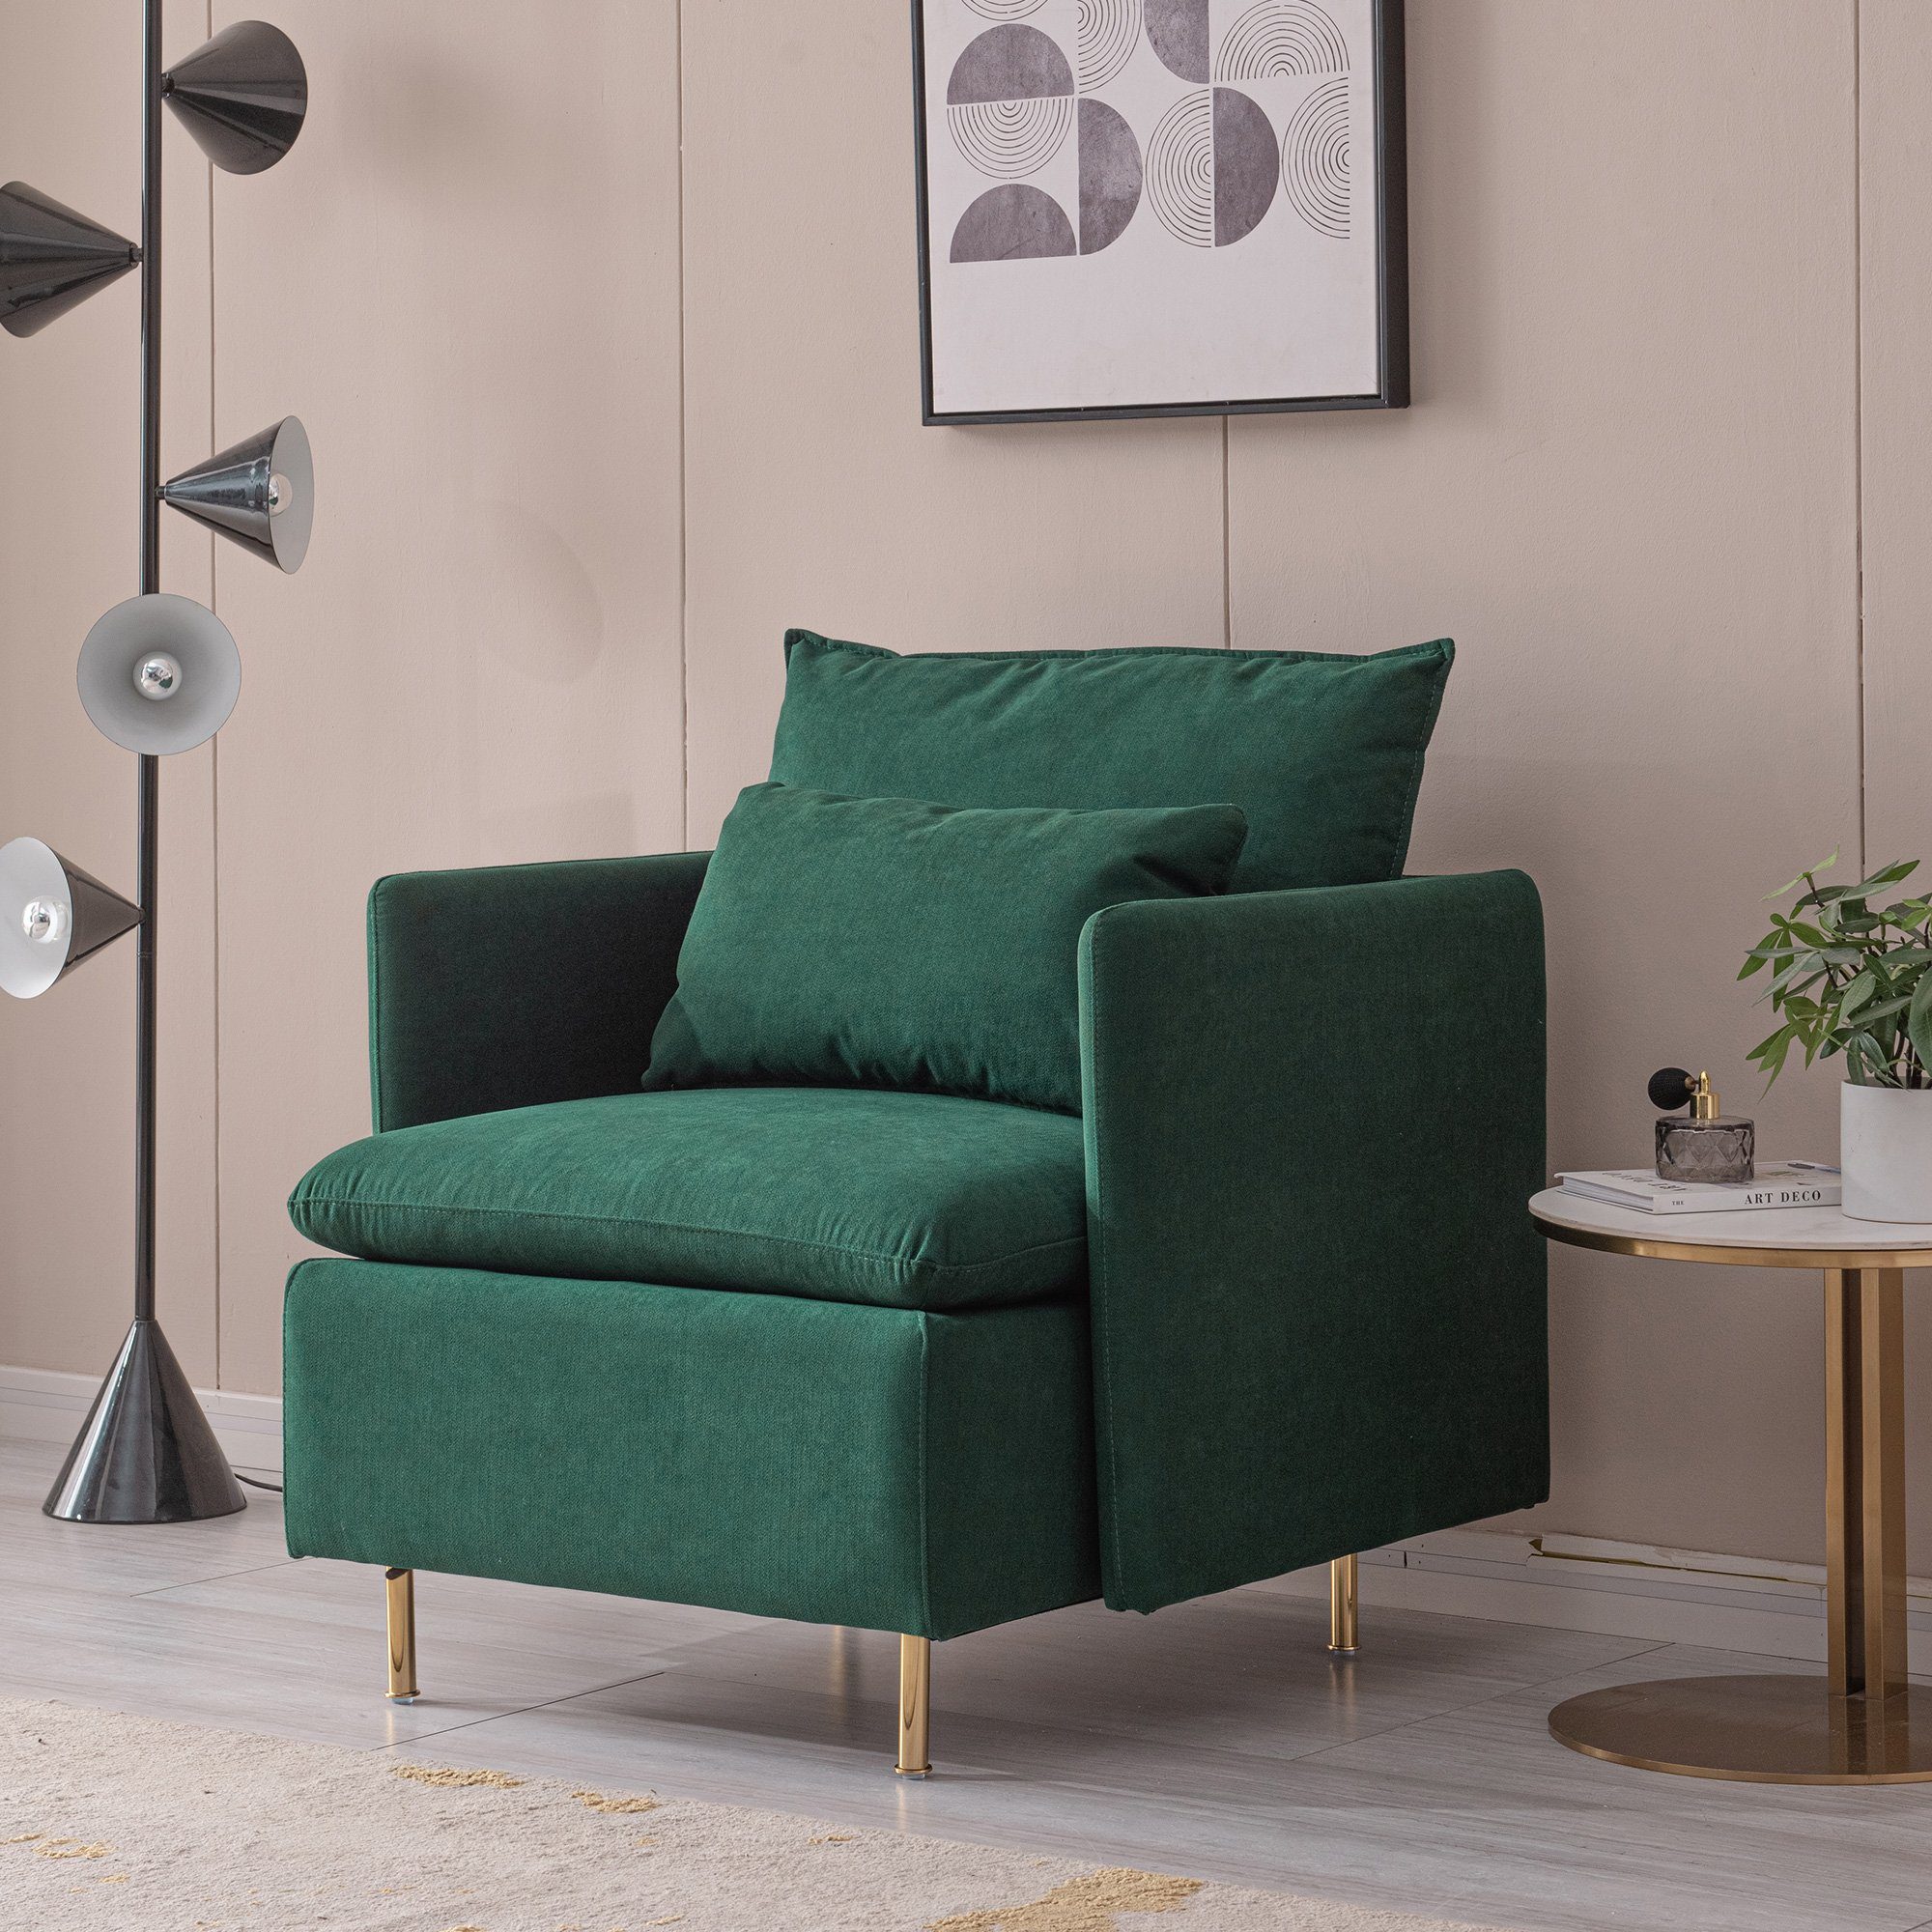 WISHDOR Sofa Fabric sofa Einzelsofa, mit Relaxfunktion, Modernes Erscheinungsbild, Langlebige Konstruktion Grün